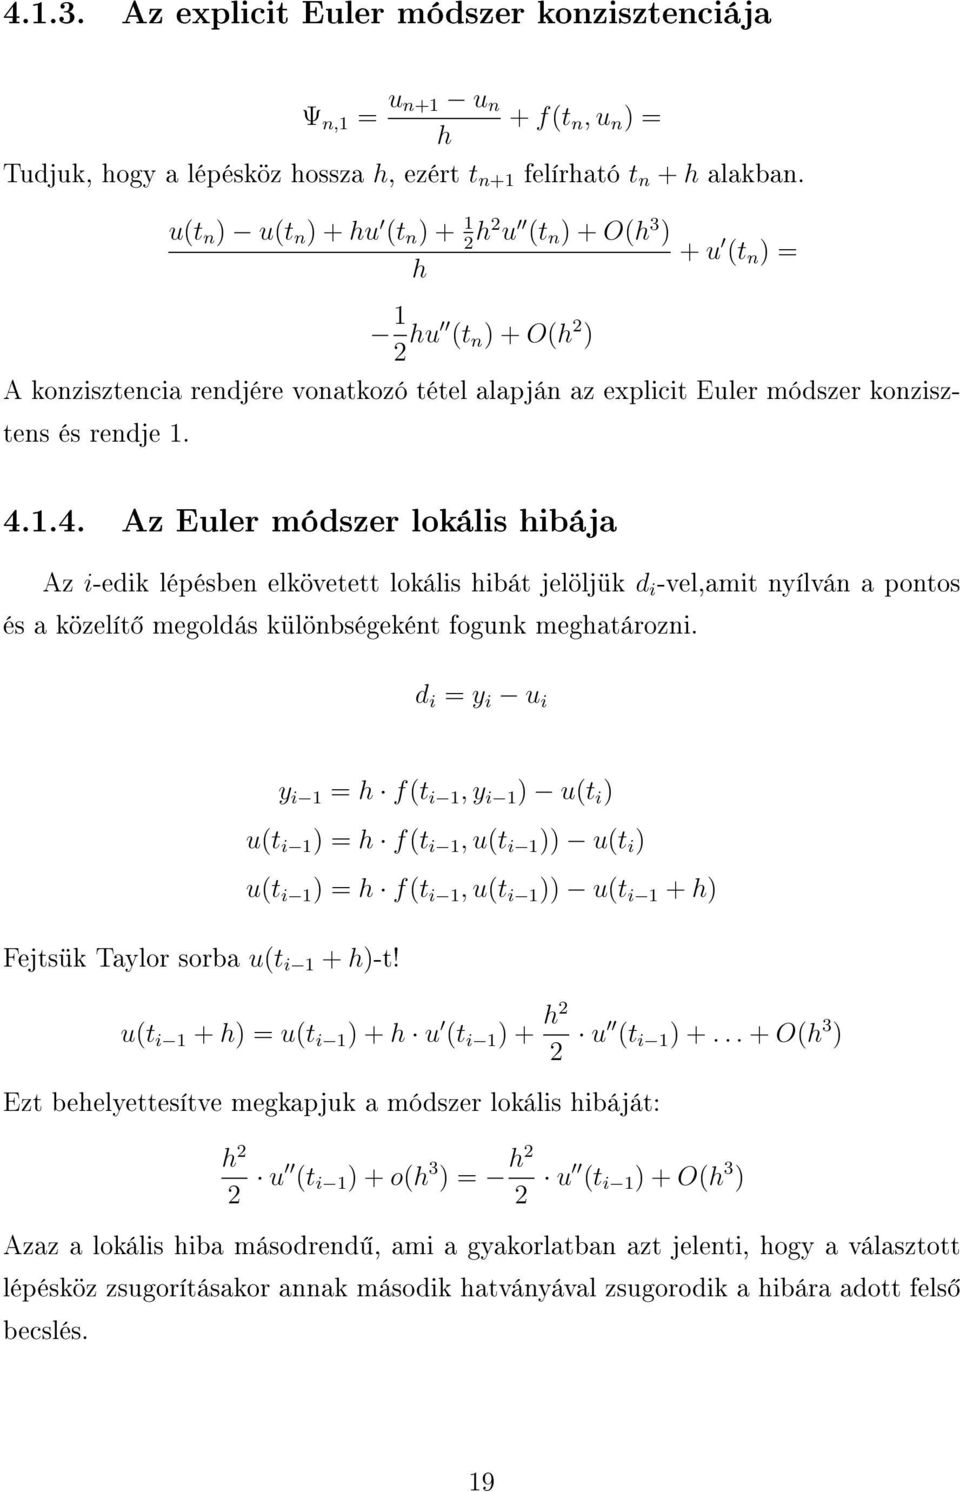 1.4. Az Euler módszer lokális hibája Az i-edik lépésben elkövetett lokális hibát jelöljük d i -vel,amit nyílván a pontos és a közelít megoldás különbségeként fogunk meghatározni.